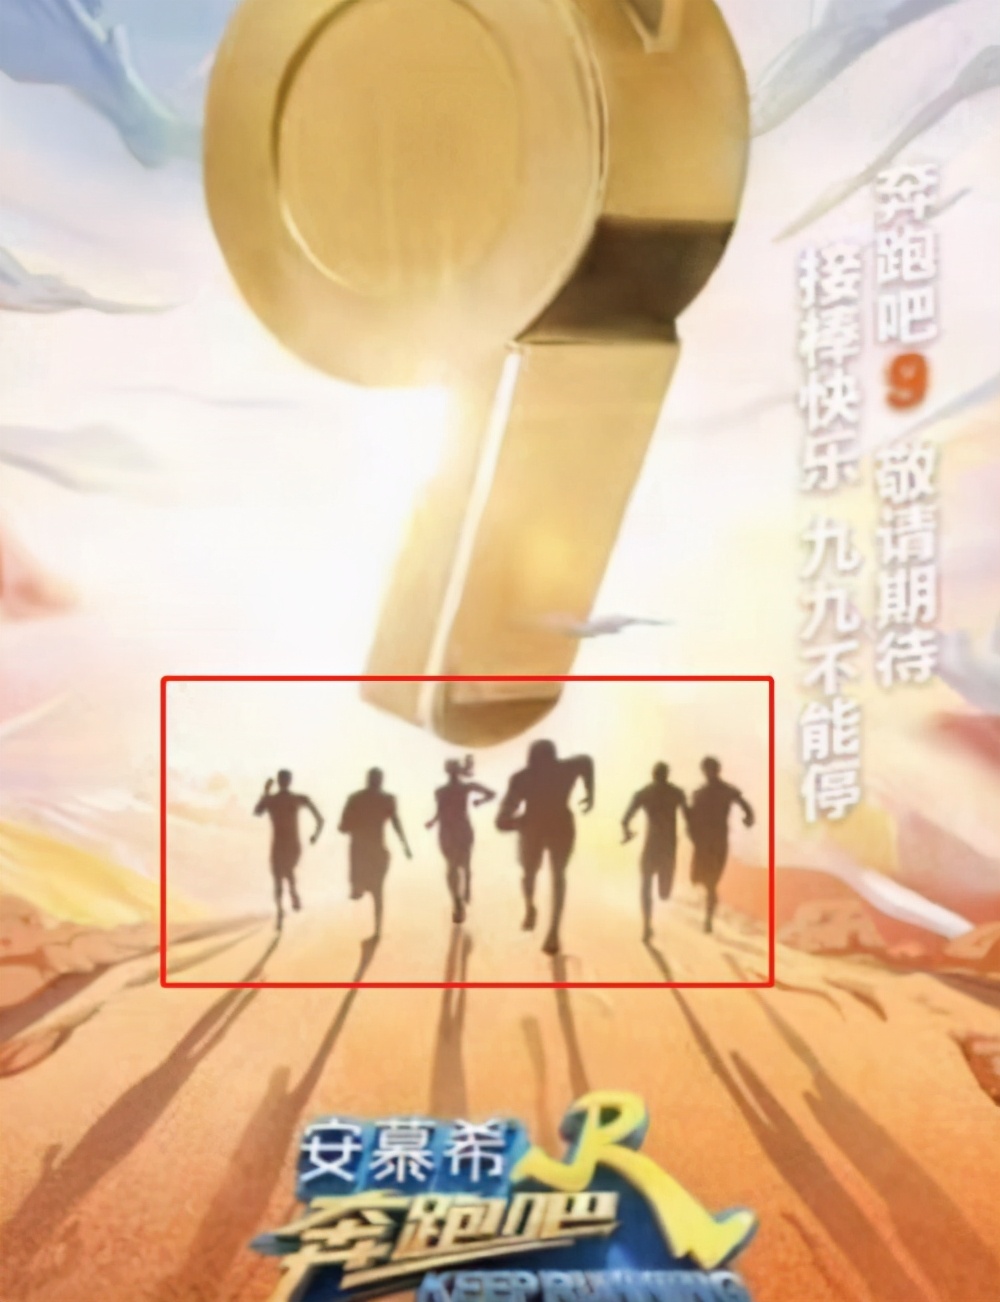 《跑男9》剪影海报引争议，杨颖成节目招牌，蔡徐坤要拿放大镜找